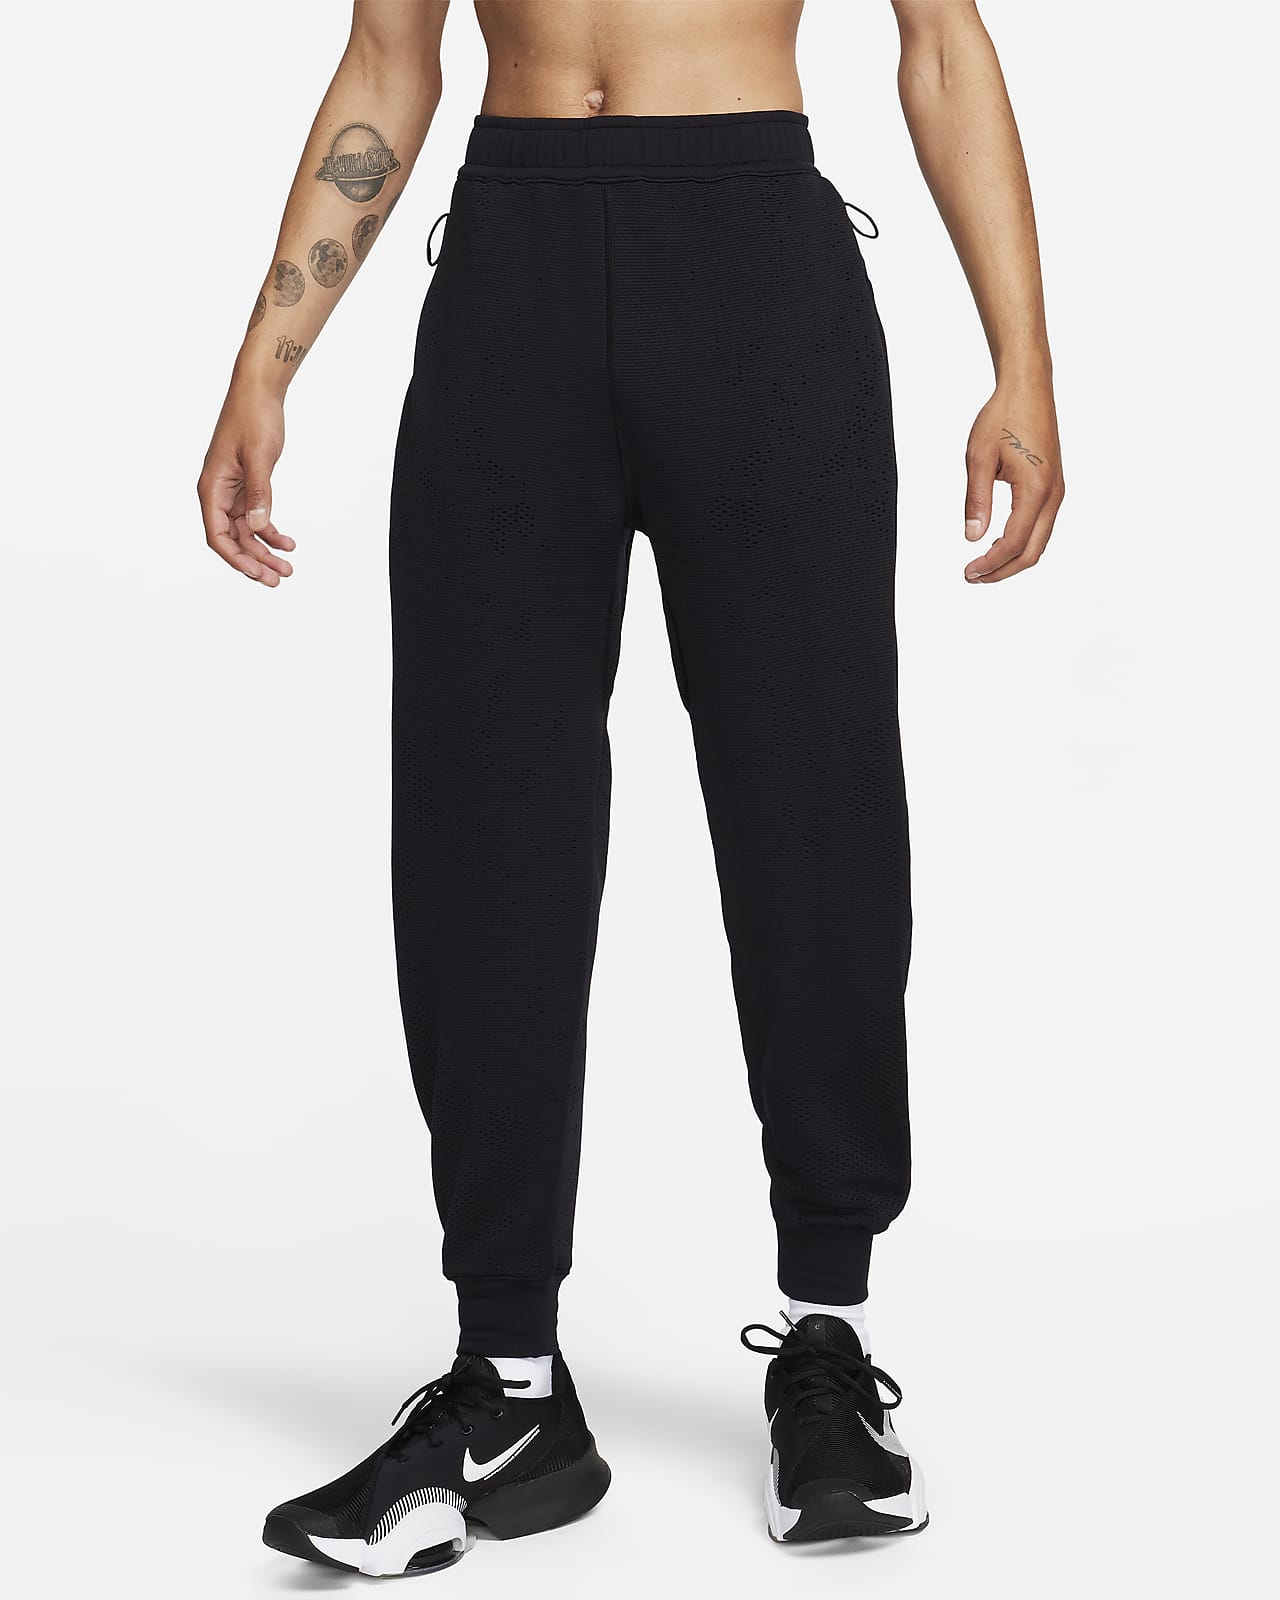 Nike A.P.S. Pants Therma-FIT versátiles para hombre